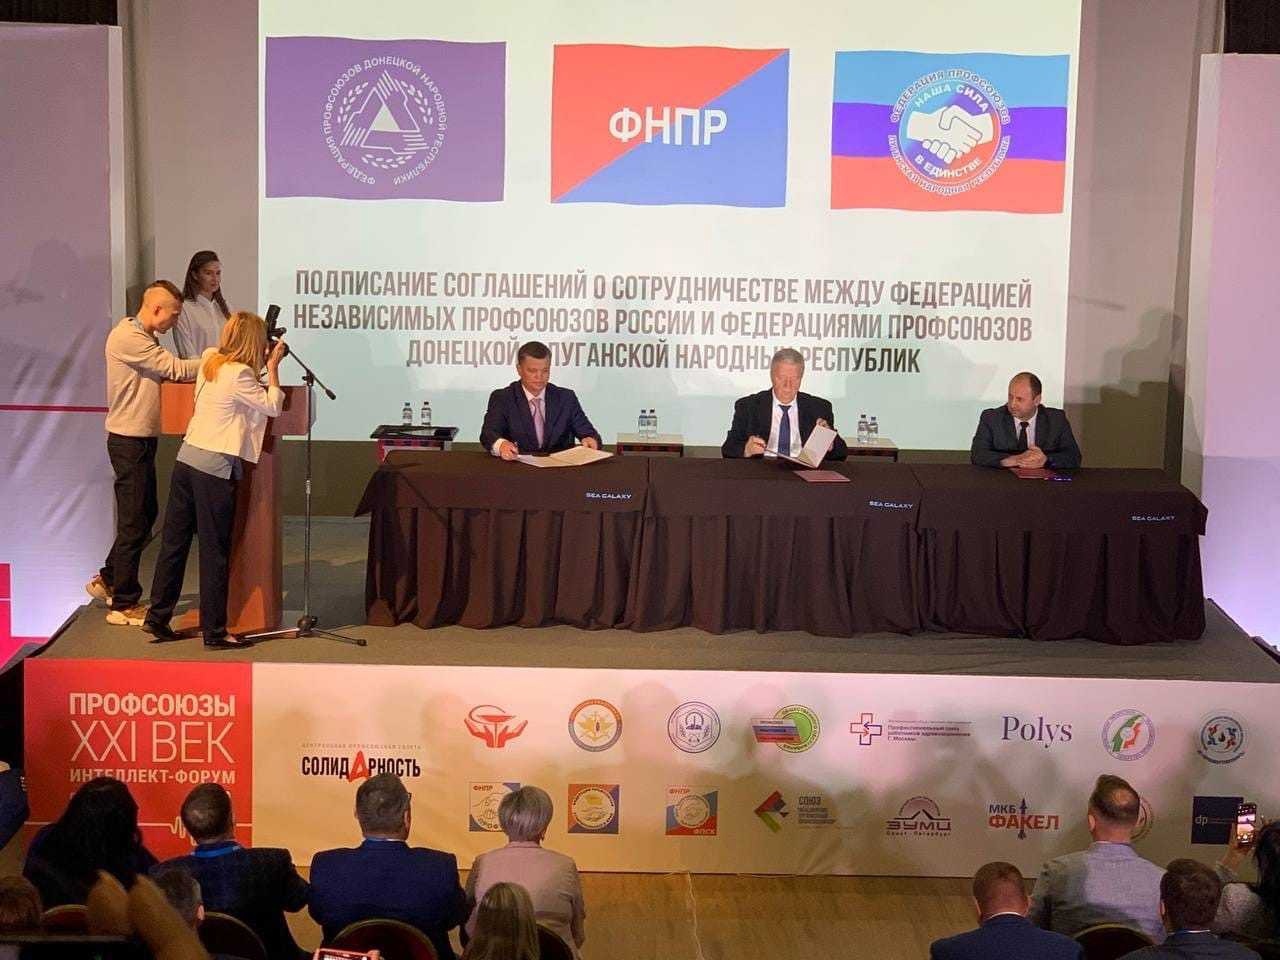 Профсоюзы России и ЛДНР подписали соглашения о сотрудничестве